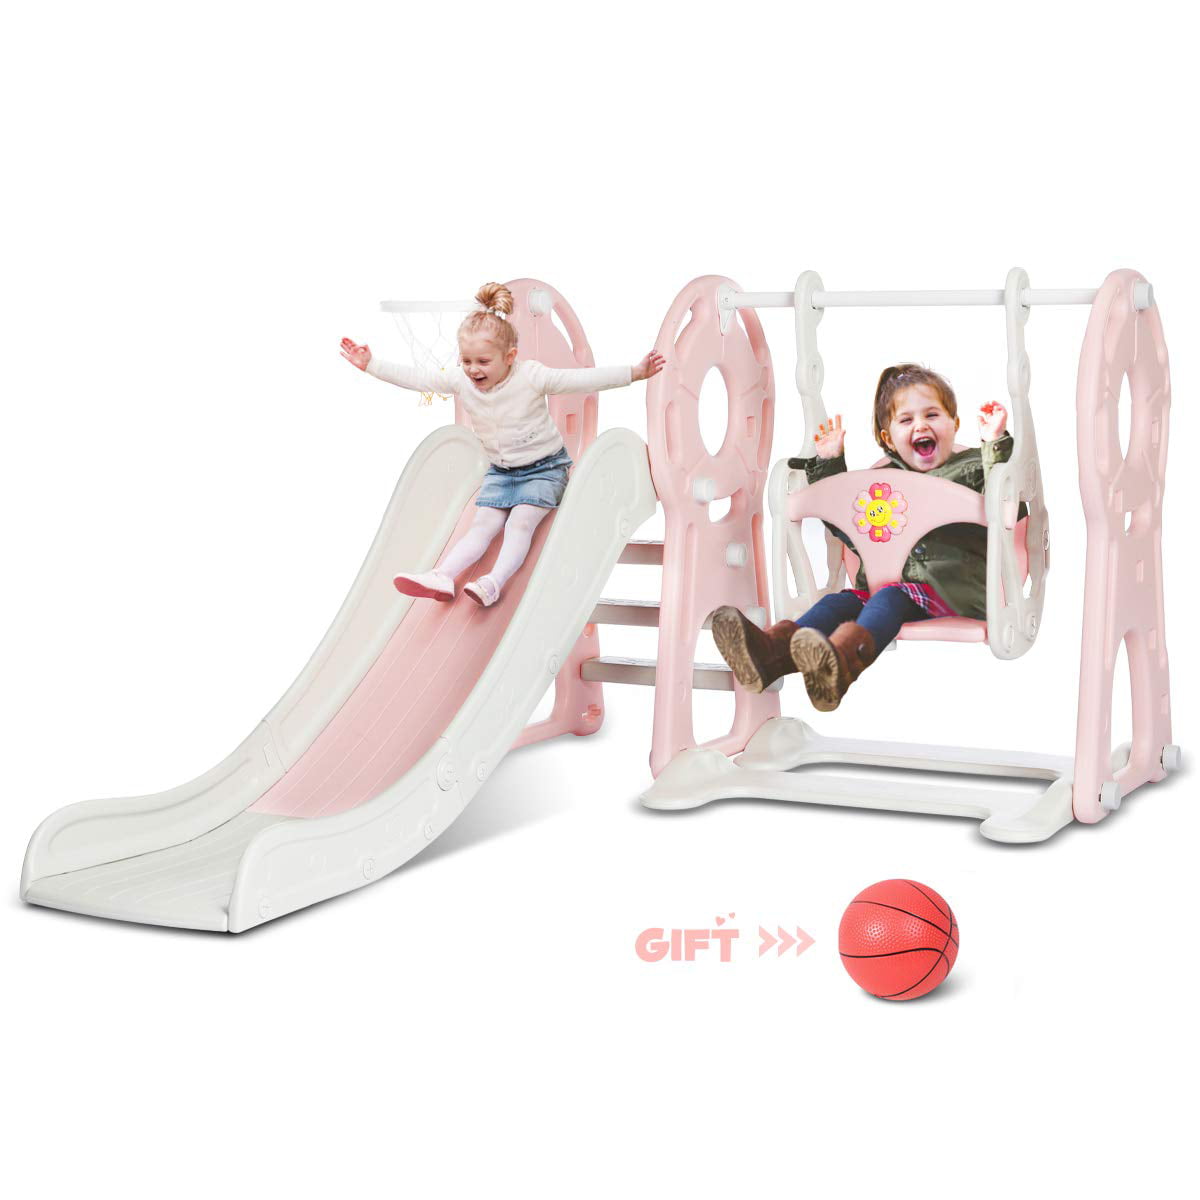 4 in 1 Kids Slide Playset Toddler Climber Swing Basketball Hoop Playground Fun 